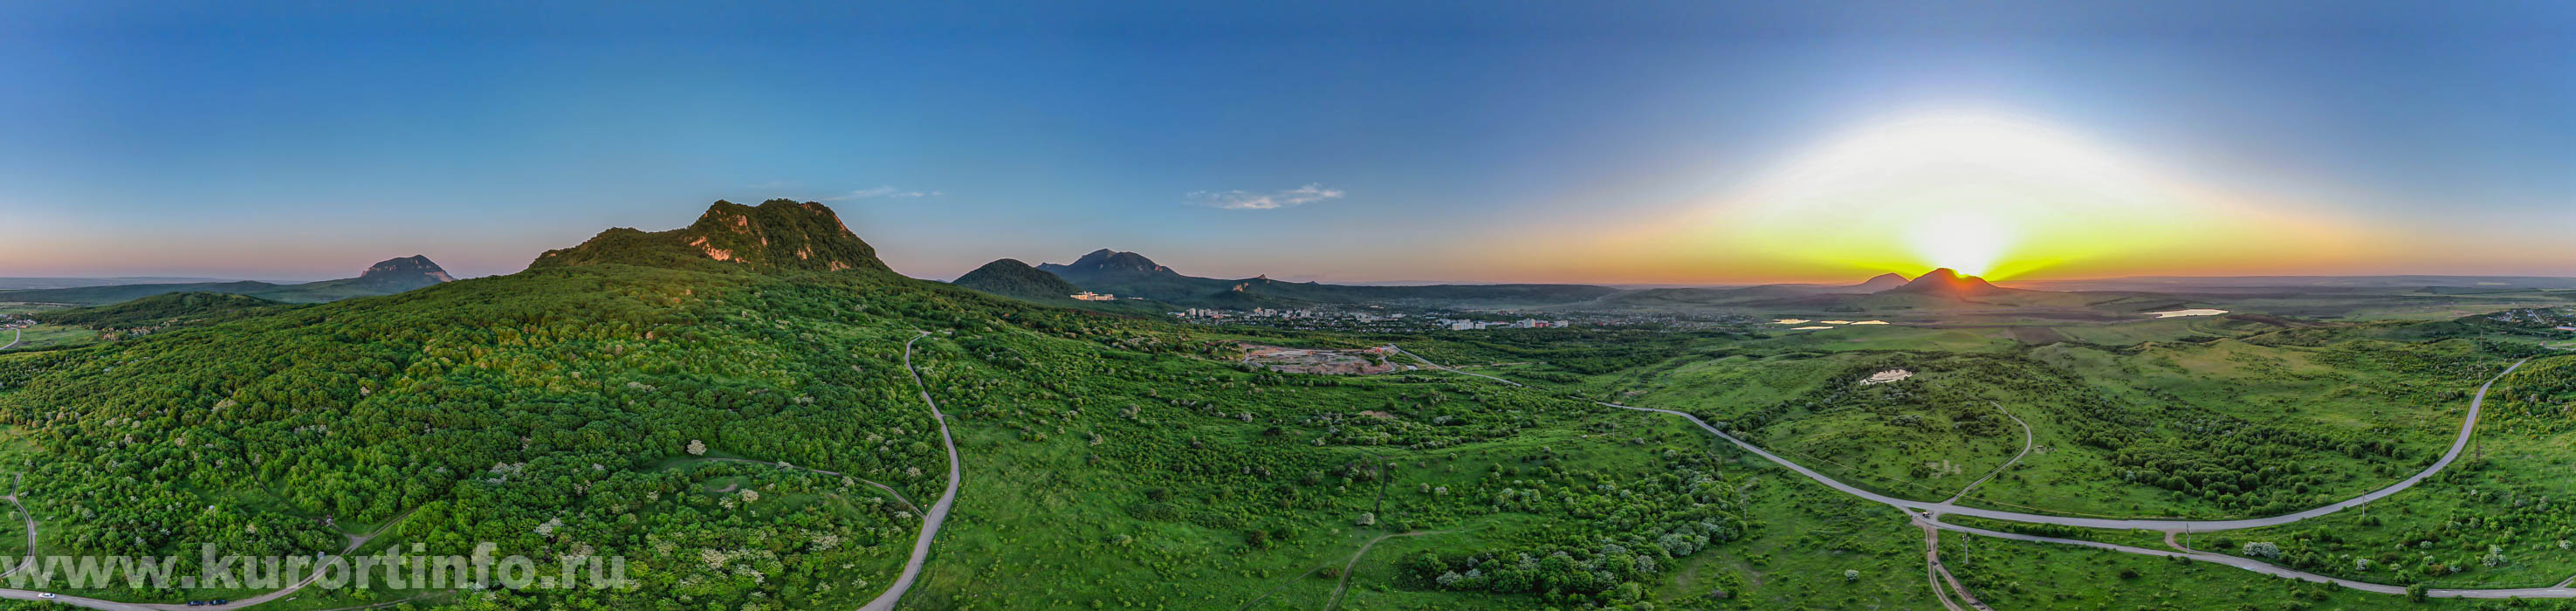 Фото панорама от горы Развалка Железноводск